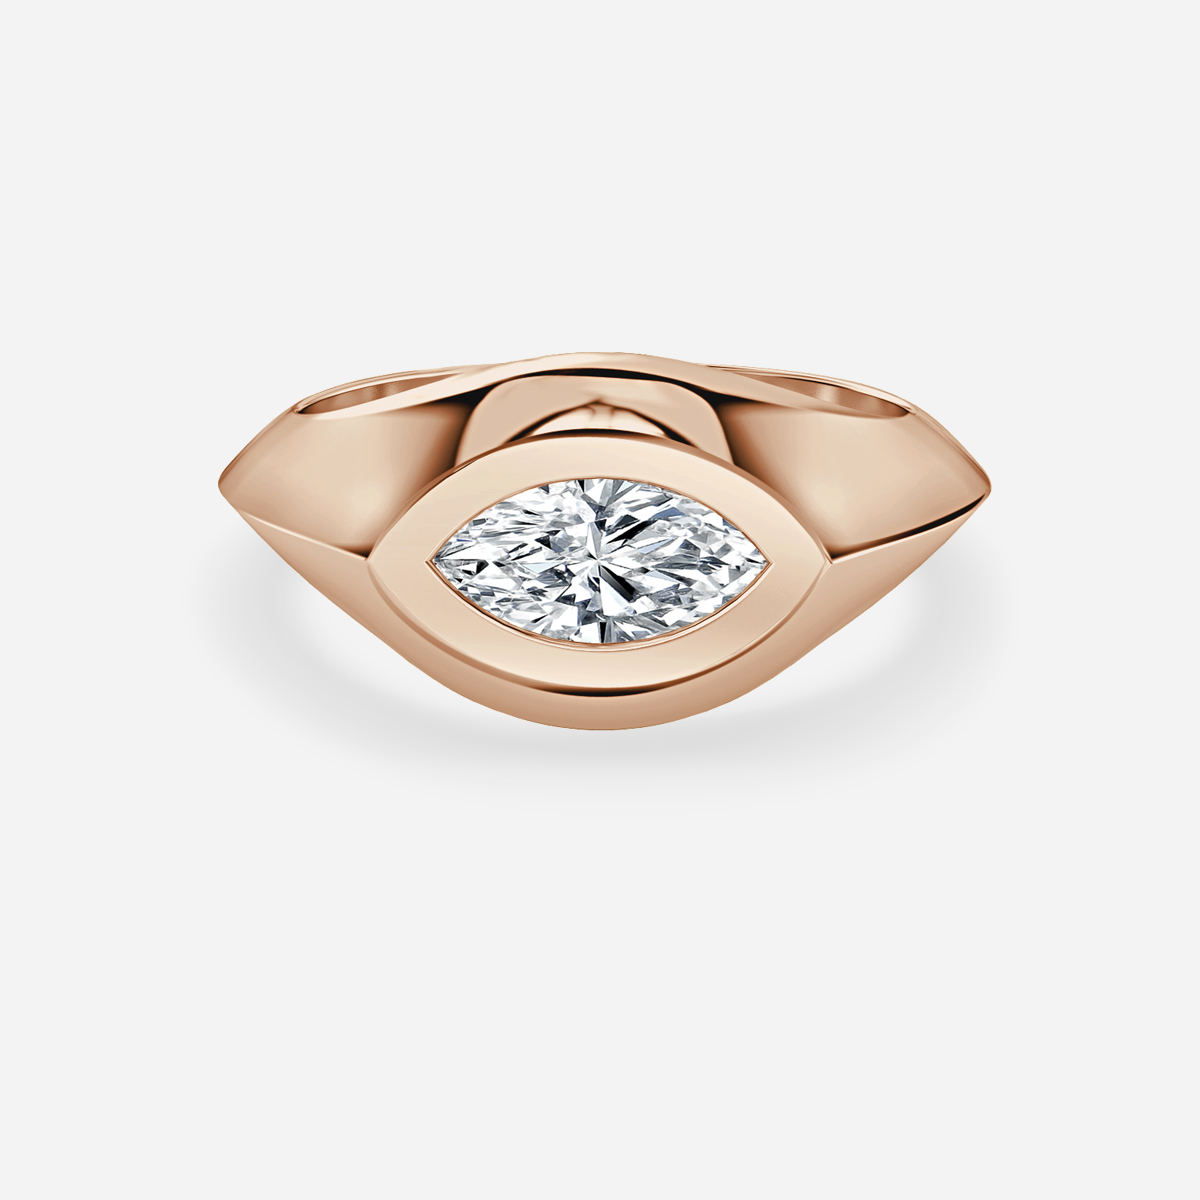 Kairos Rose Gold Engagement Ring